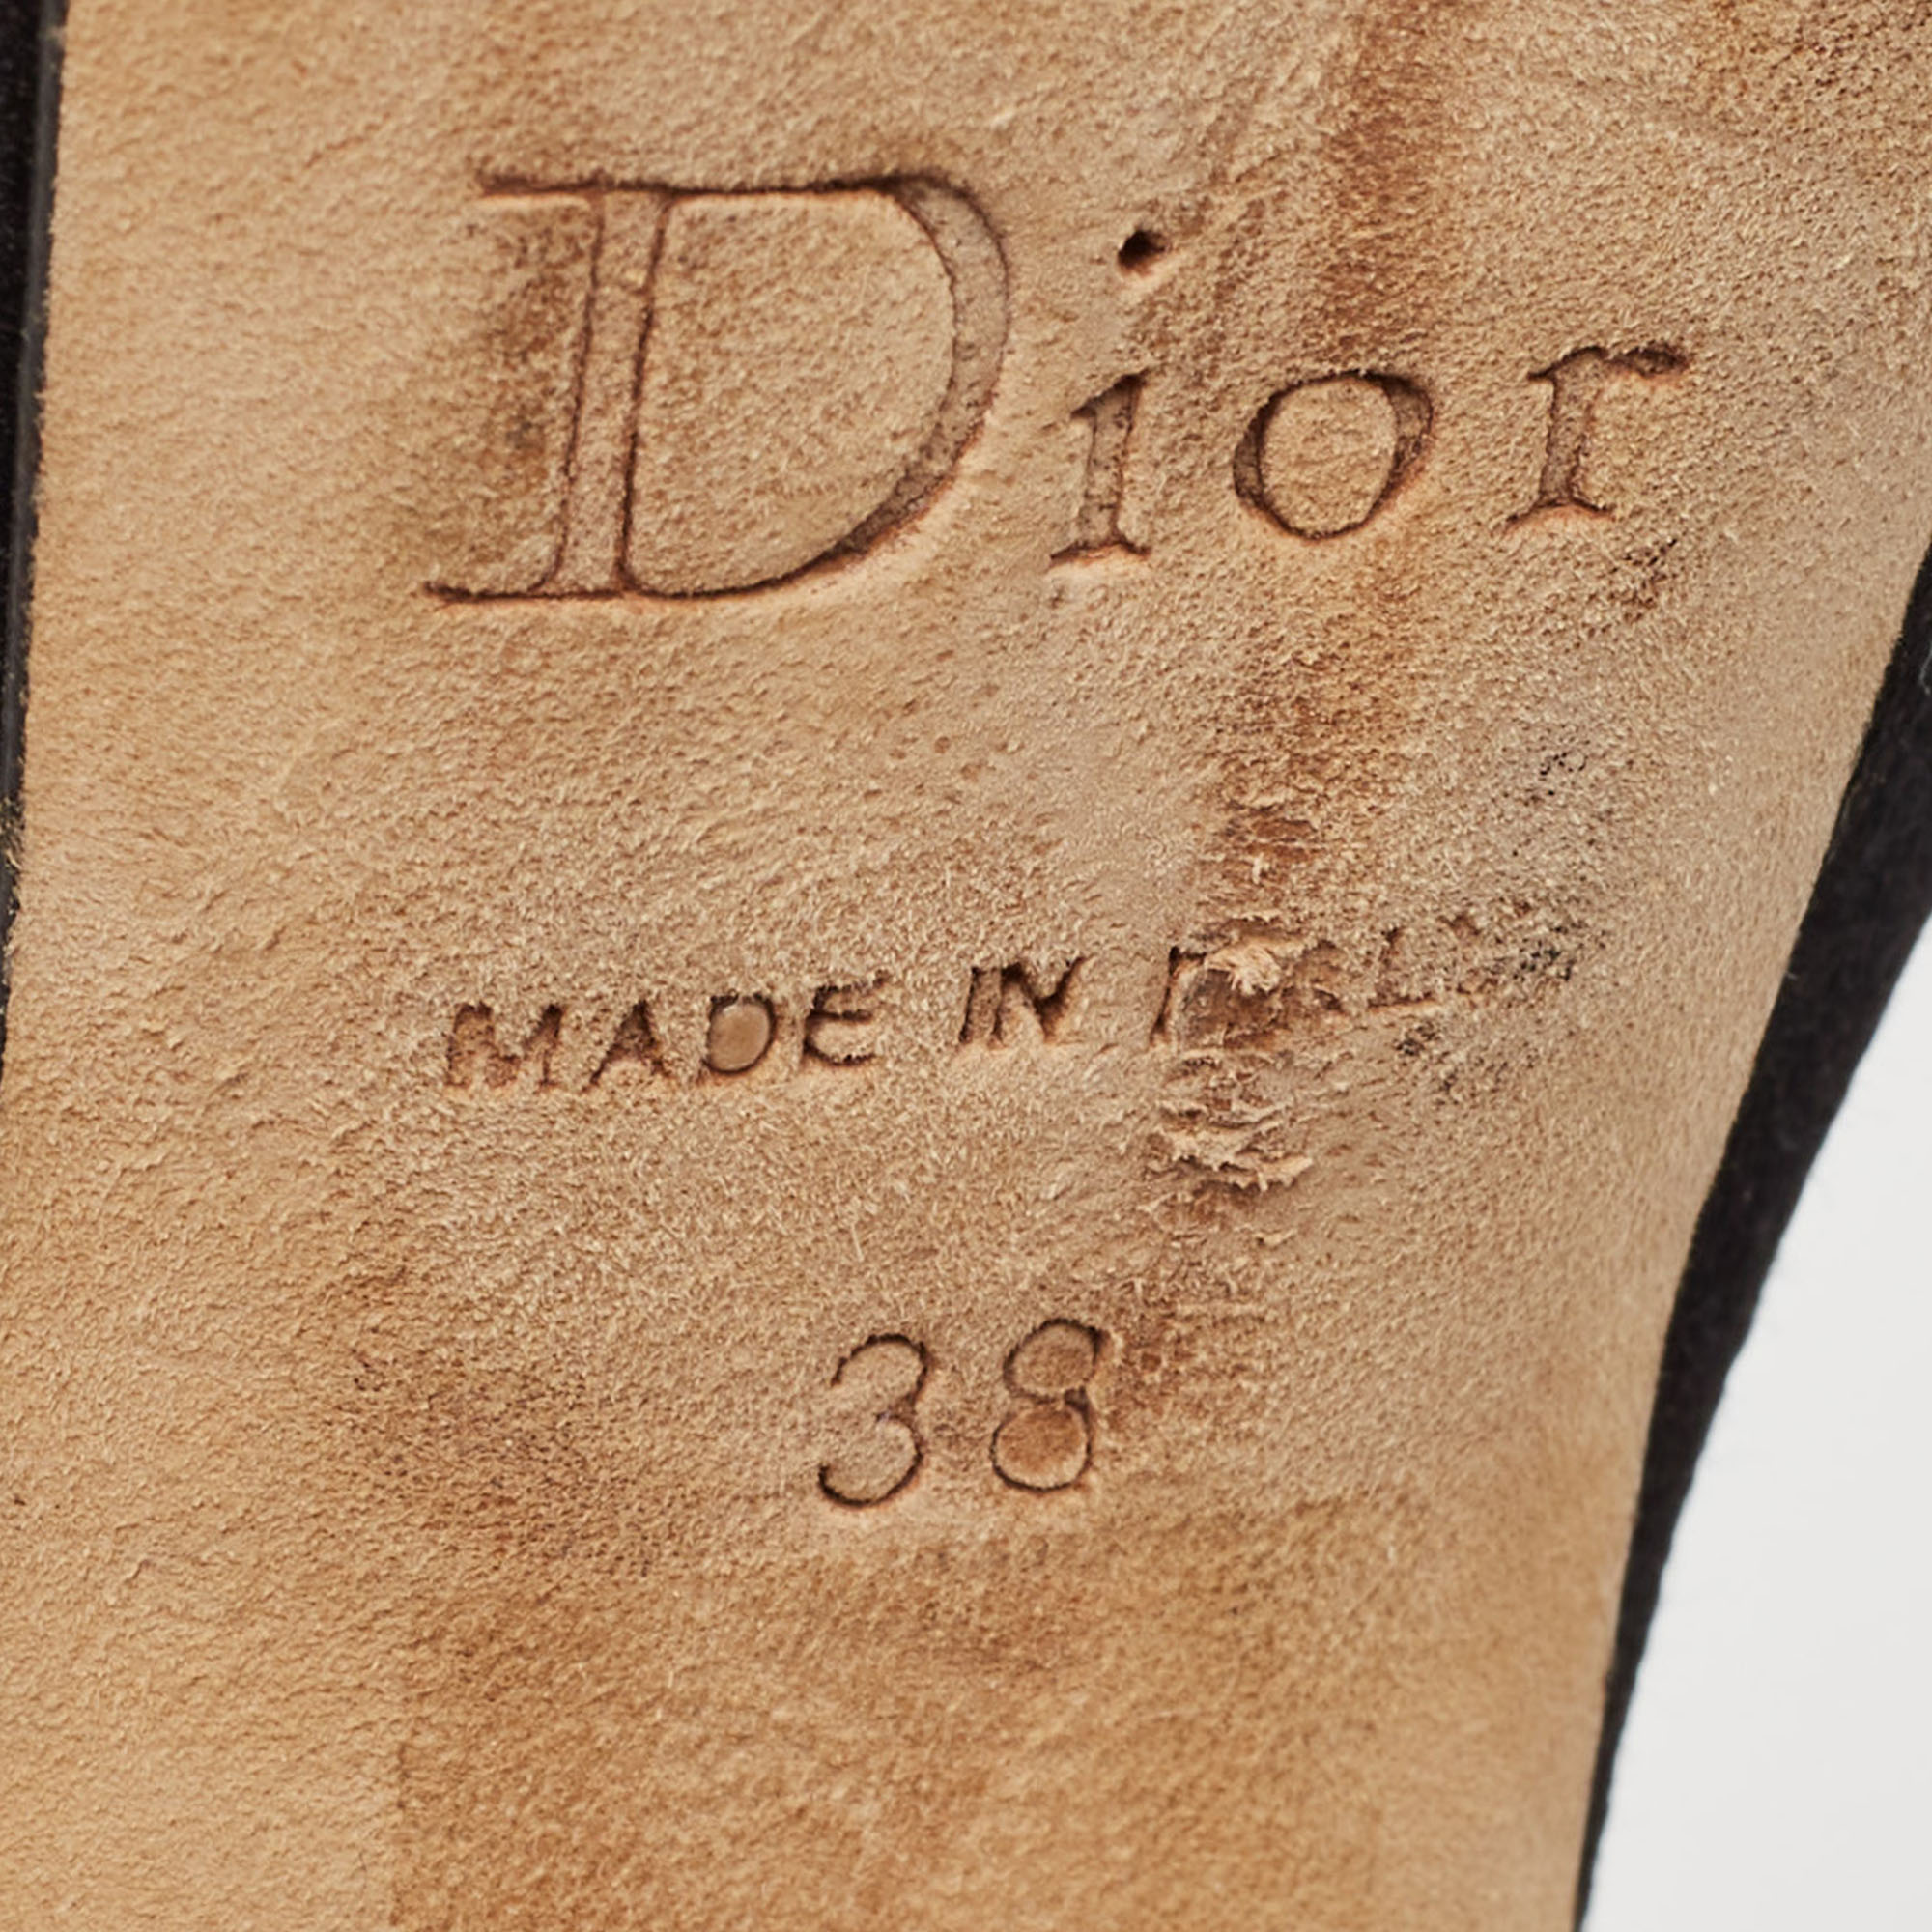 Dior Black Satin Crystal Embellished Cannage Heel Platform Ankle Strap Sandals Size 38